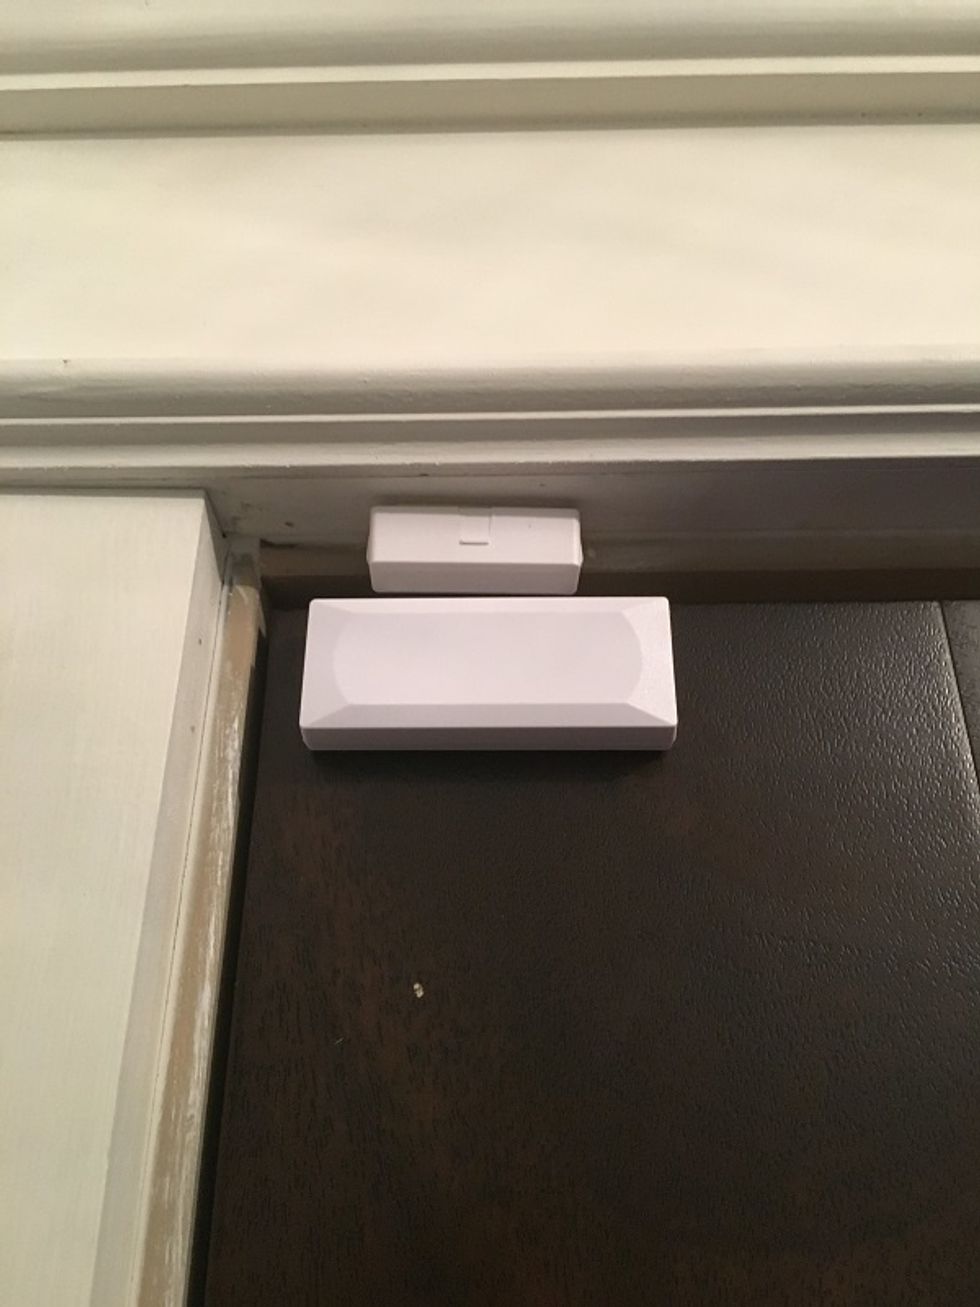 Photo of Lifeshield door sensor on a door.